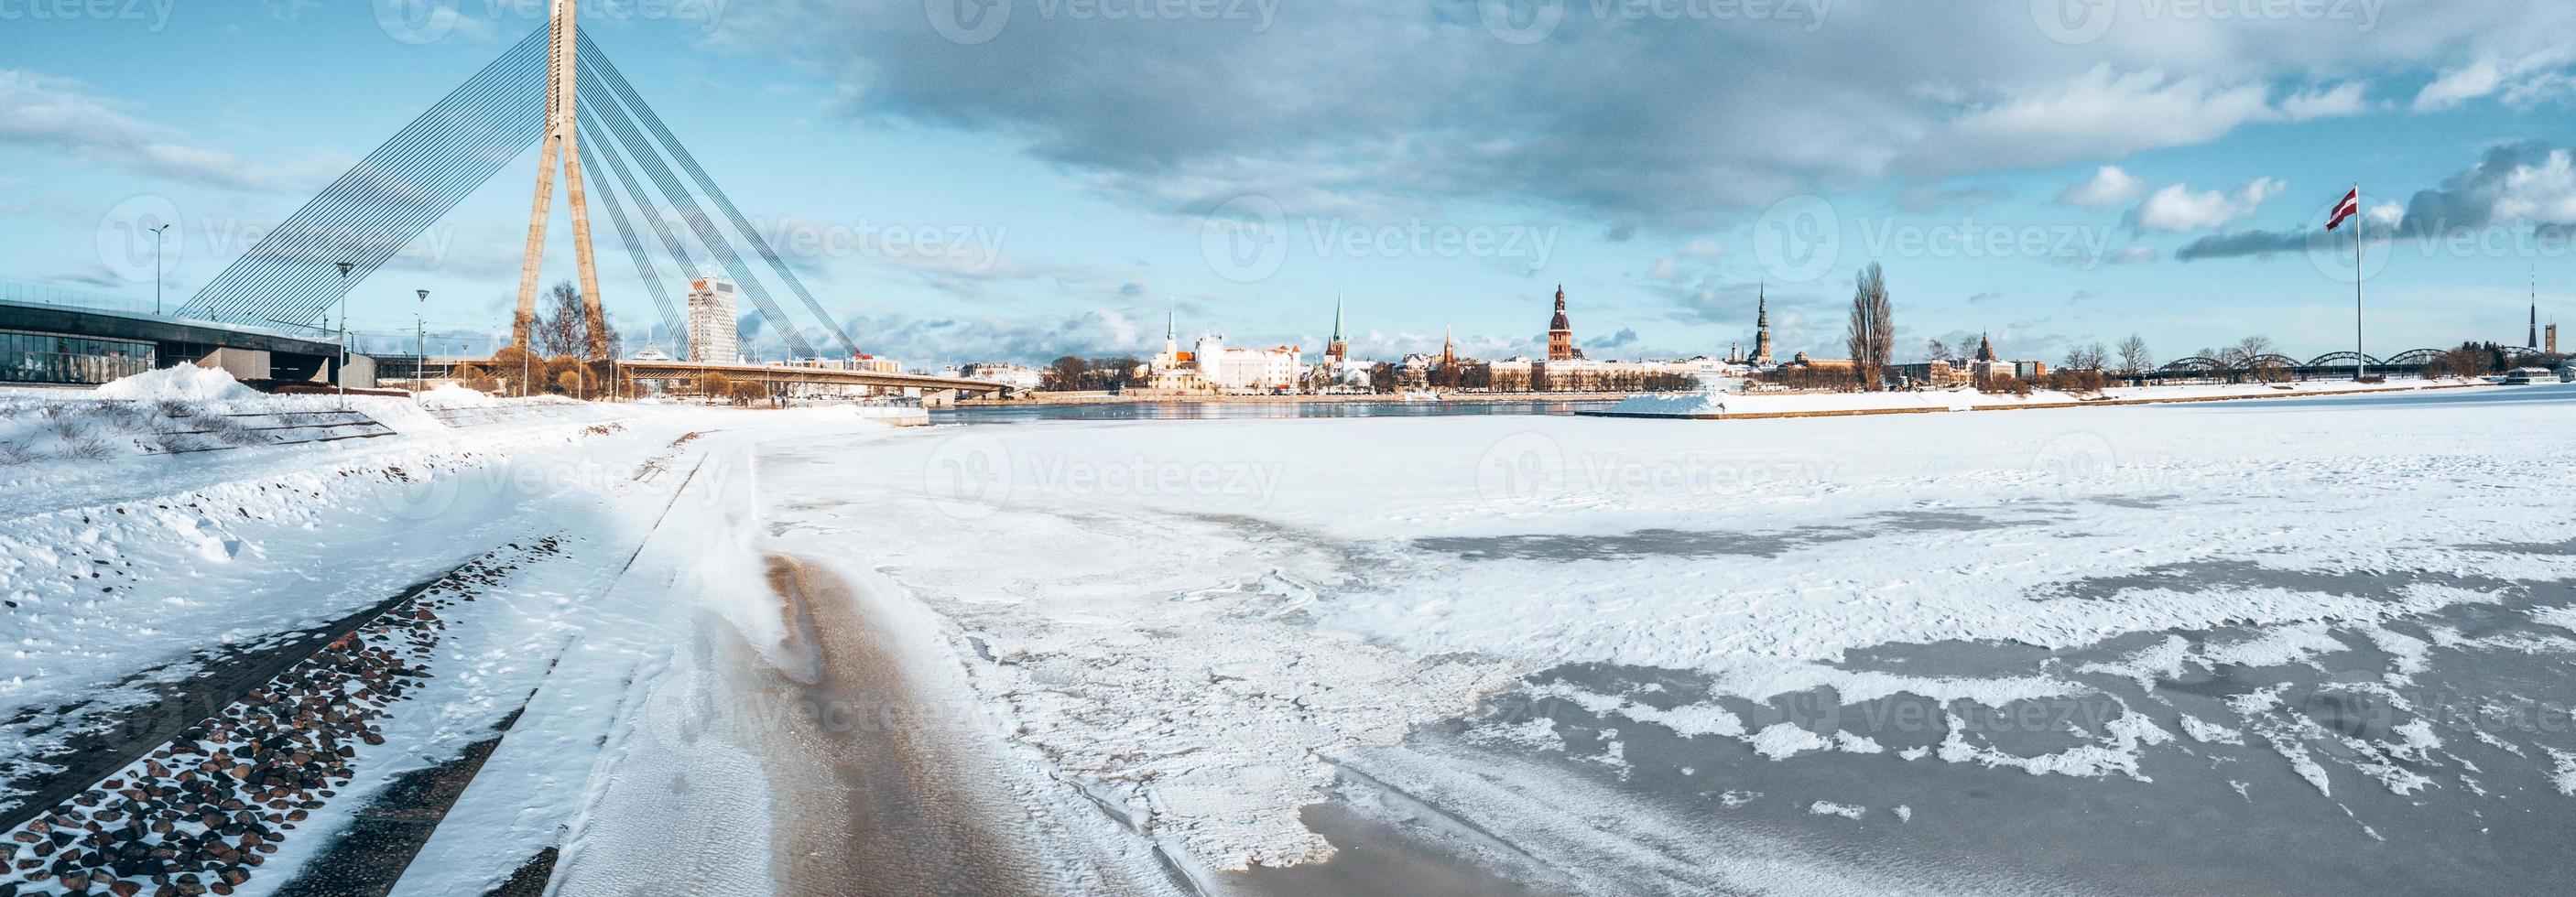 belle vue sur la rivière gelée avec des mouettes assises sur la glace par la vieille ville de riga en lettonie. photo